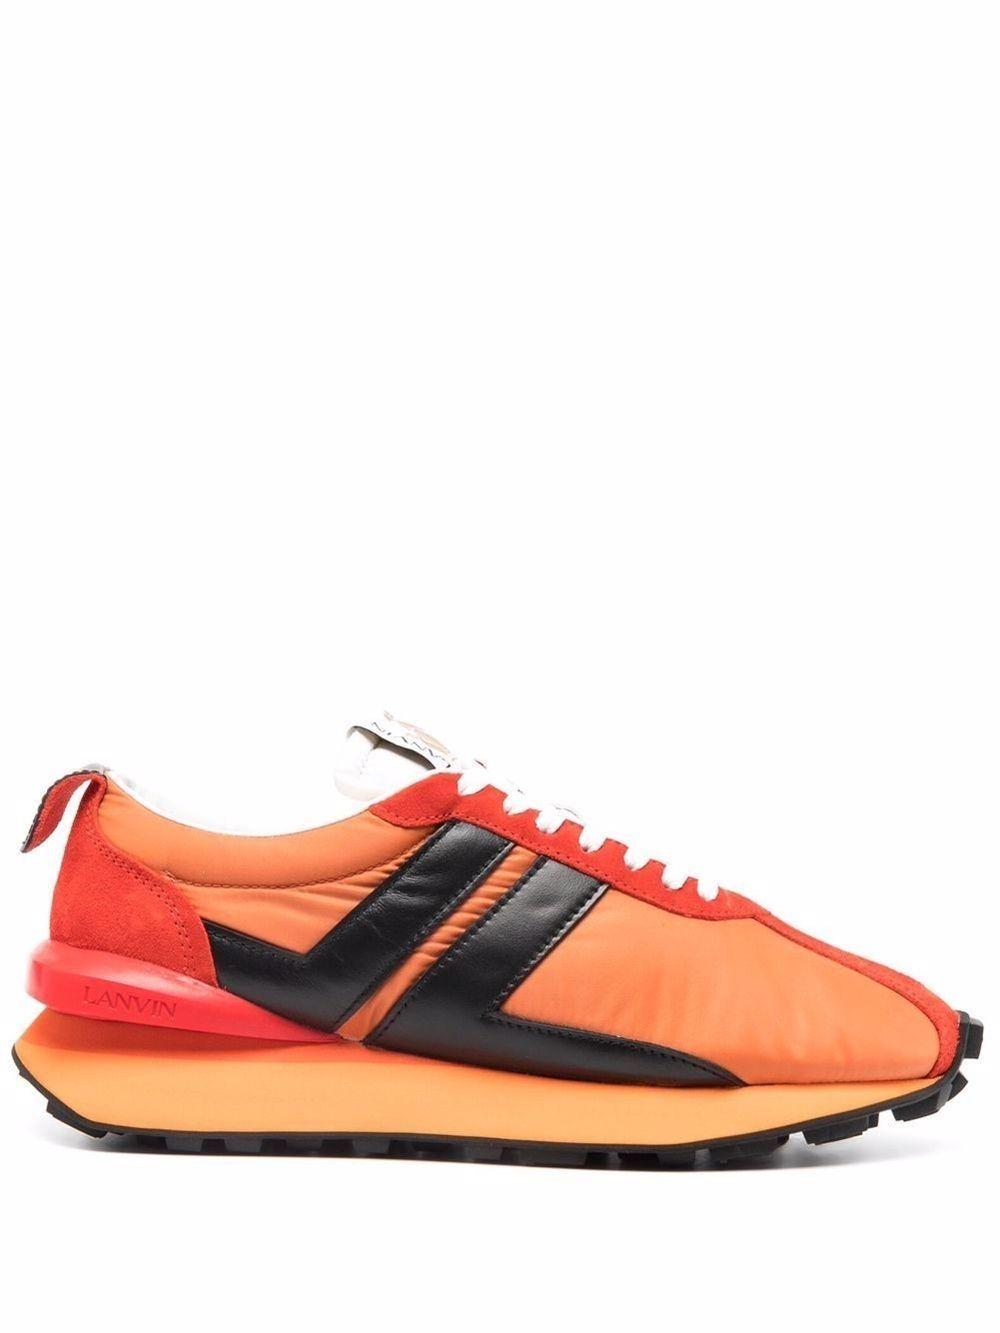 Lanvin Sneakers in Orange for Men | Lyst